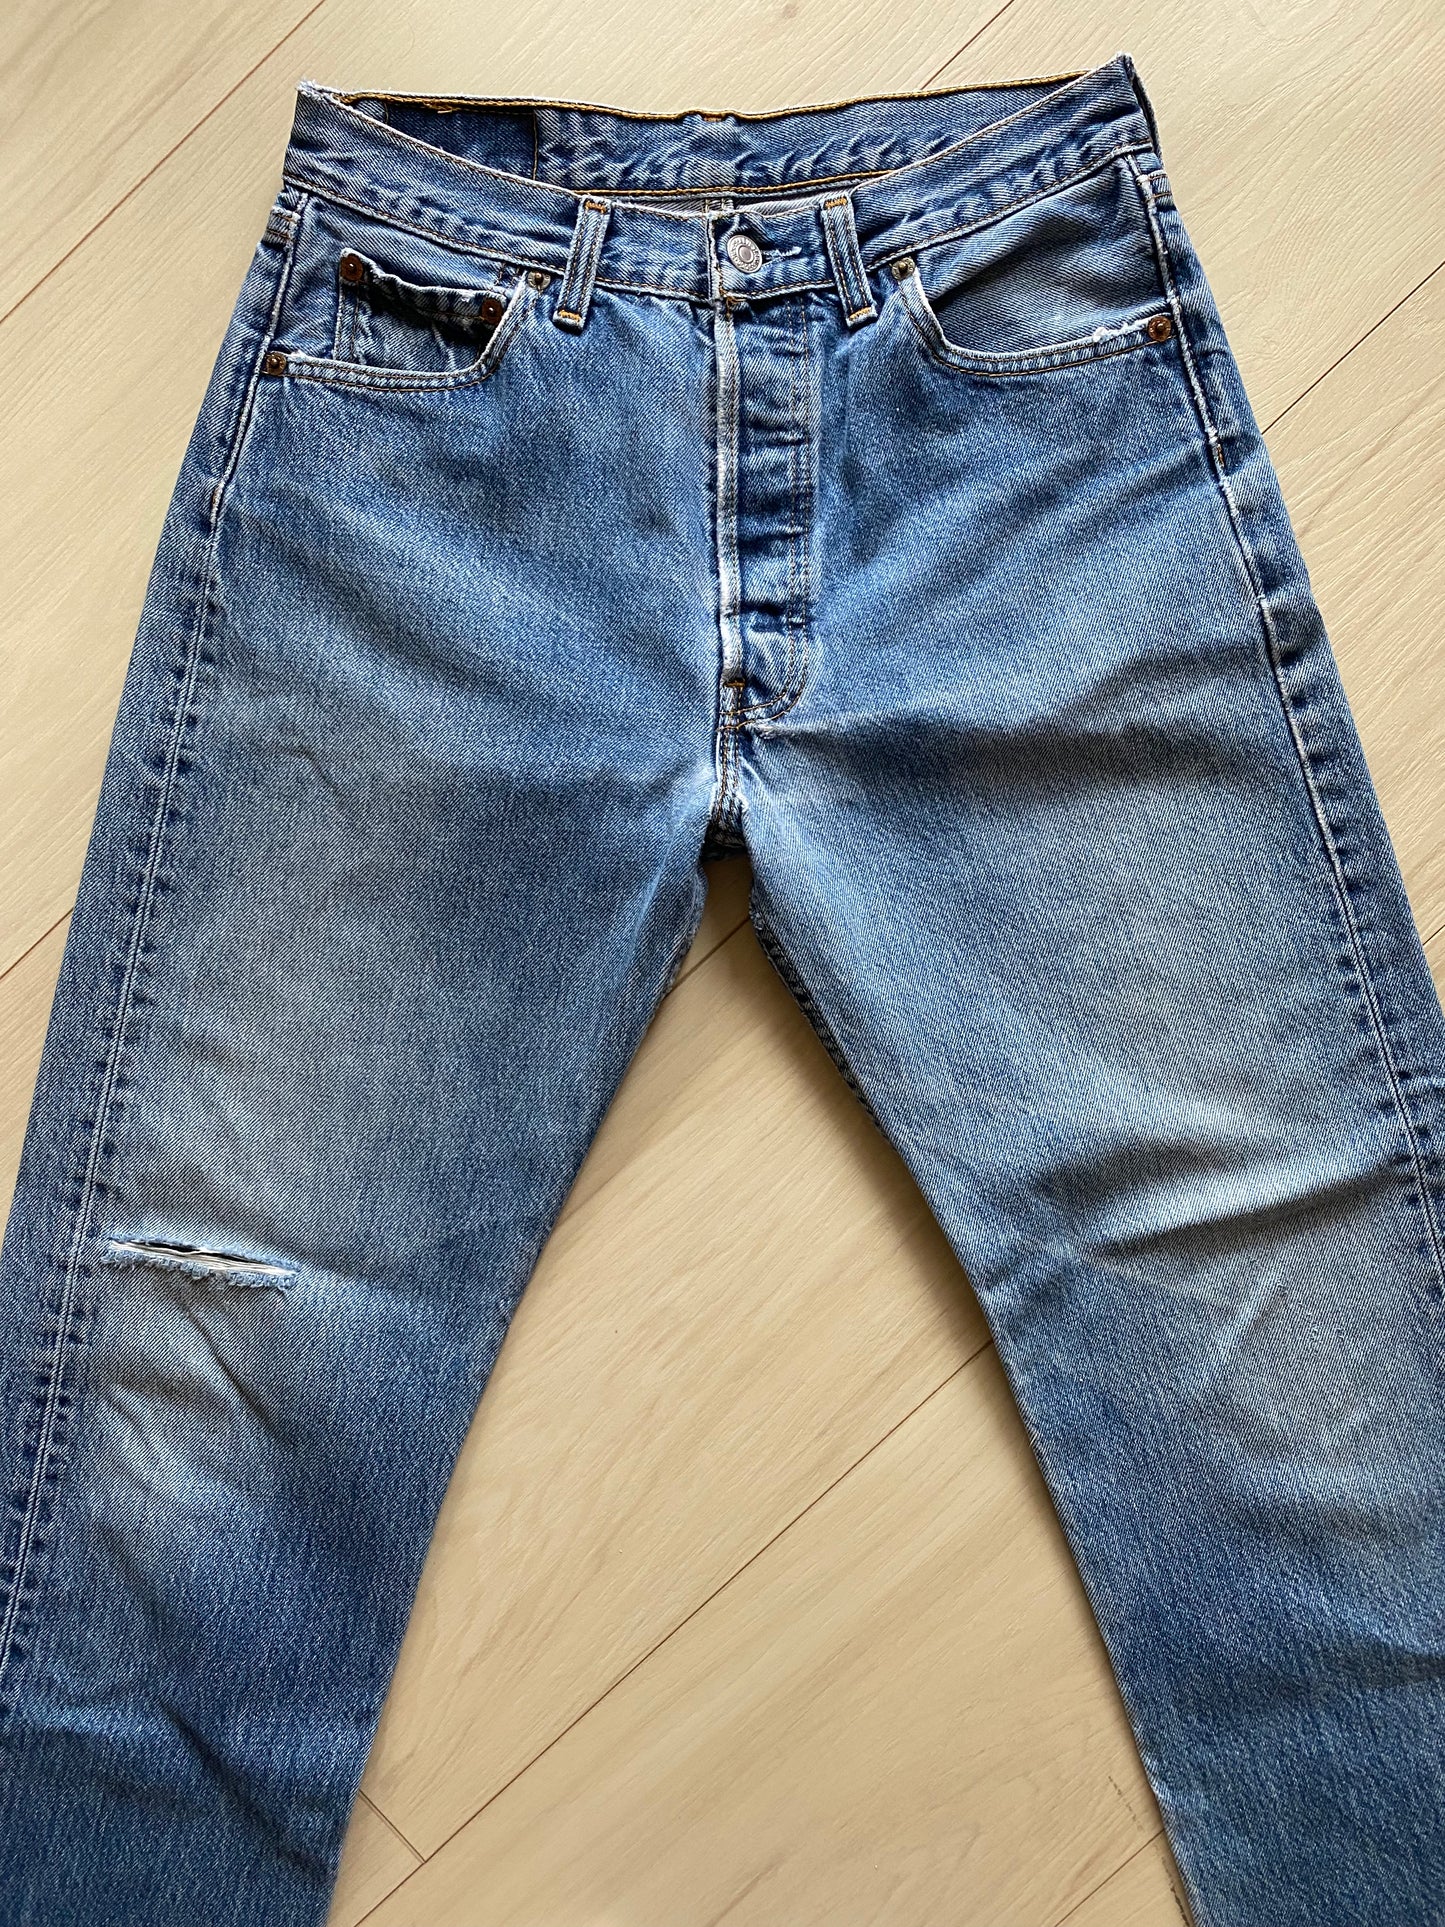 Size 27/28 Levi’s 501 jeans